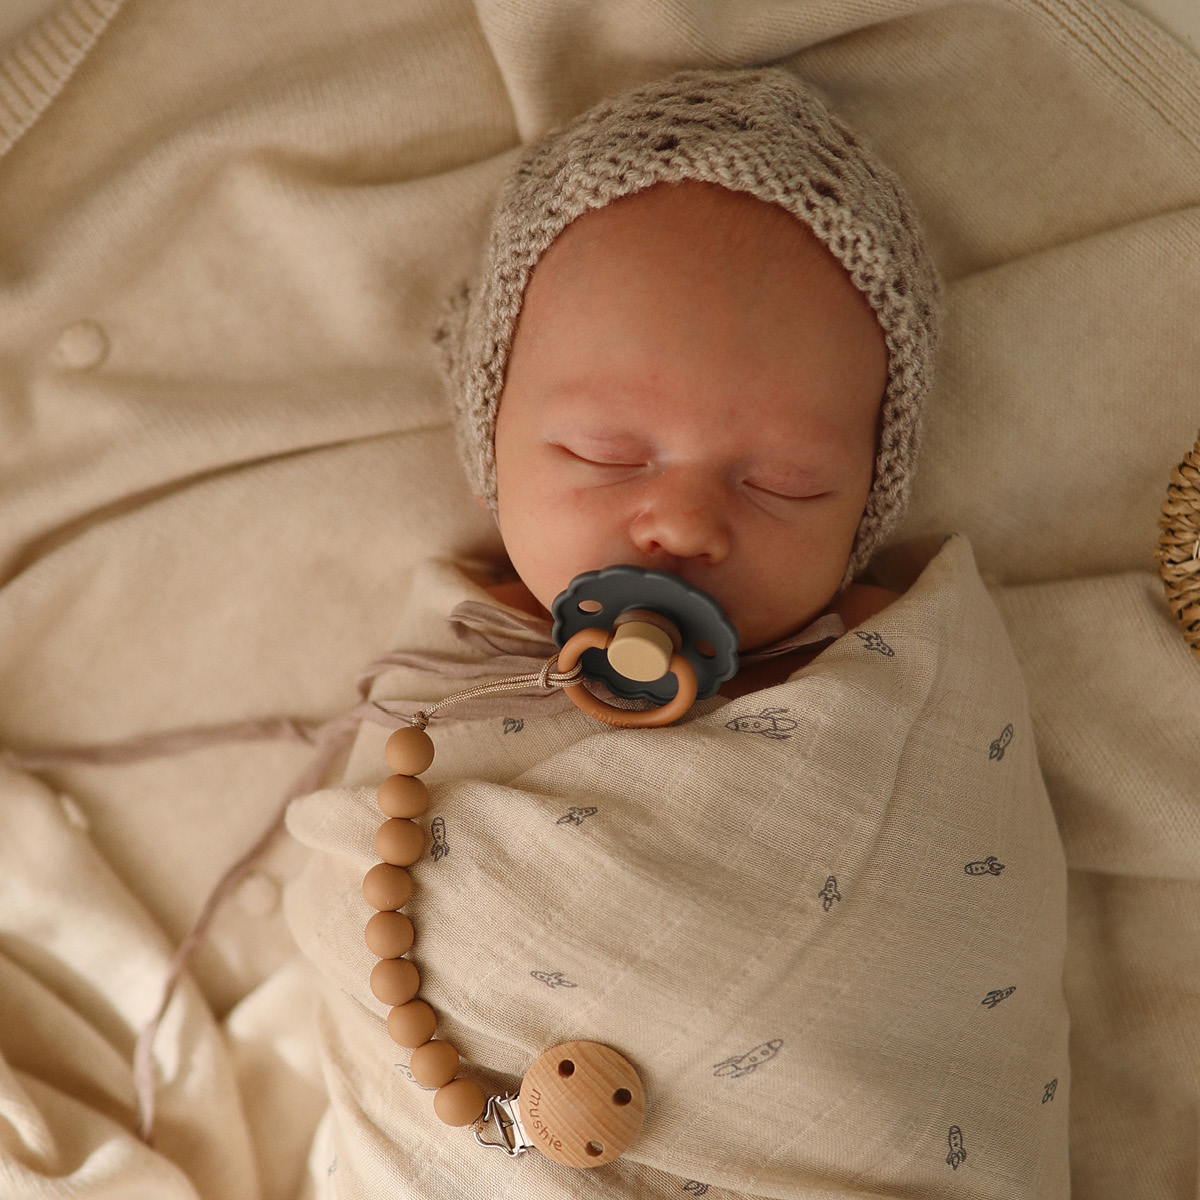 Sindsro tjeneren Bøje Svøbe baby under søvnen, hvad (godt) det kan gøre for din babys søvn